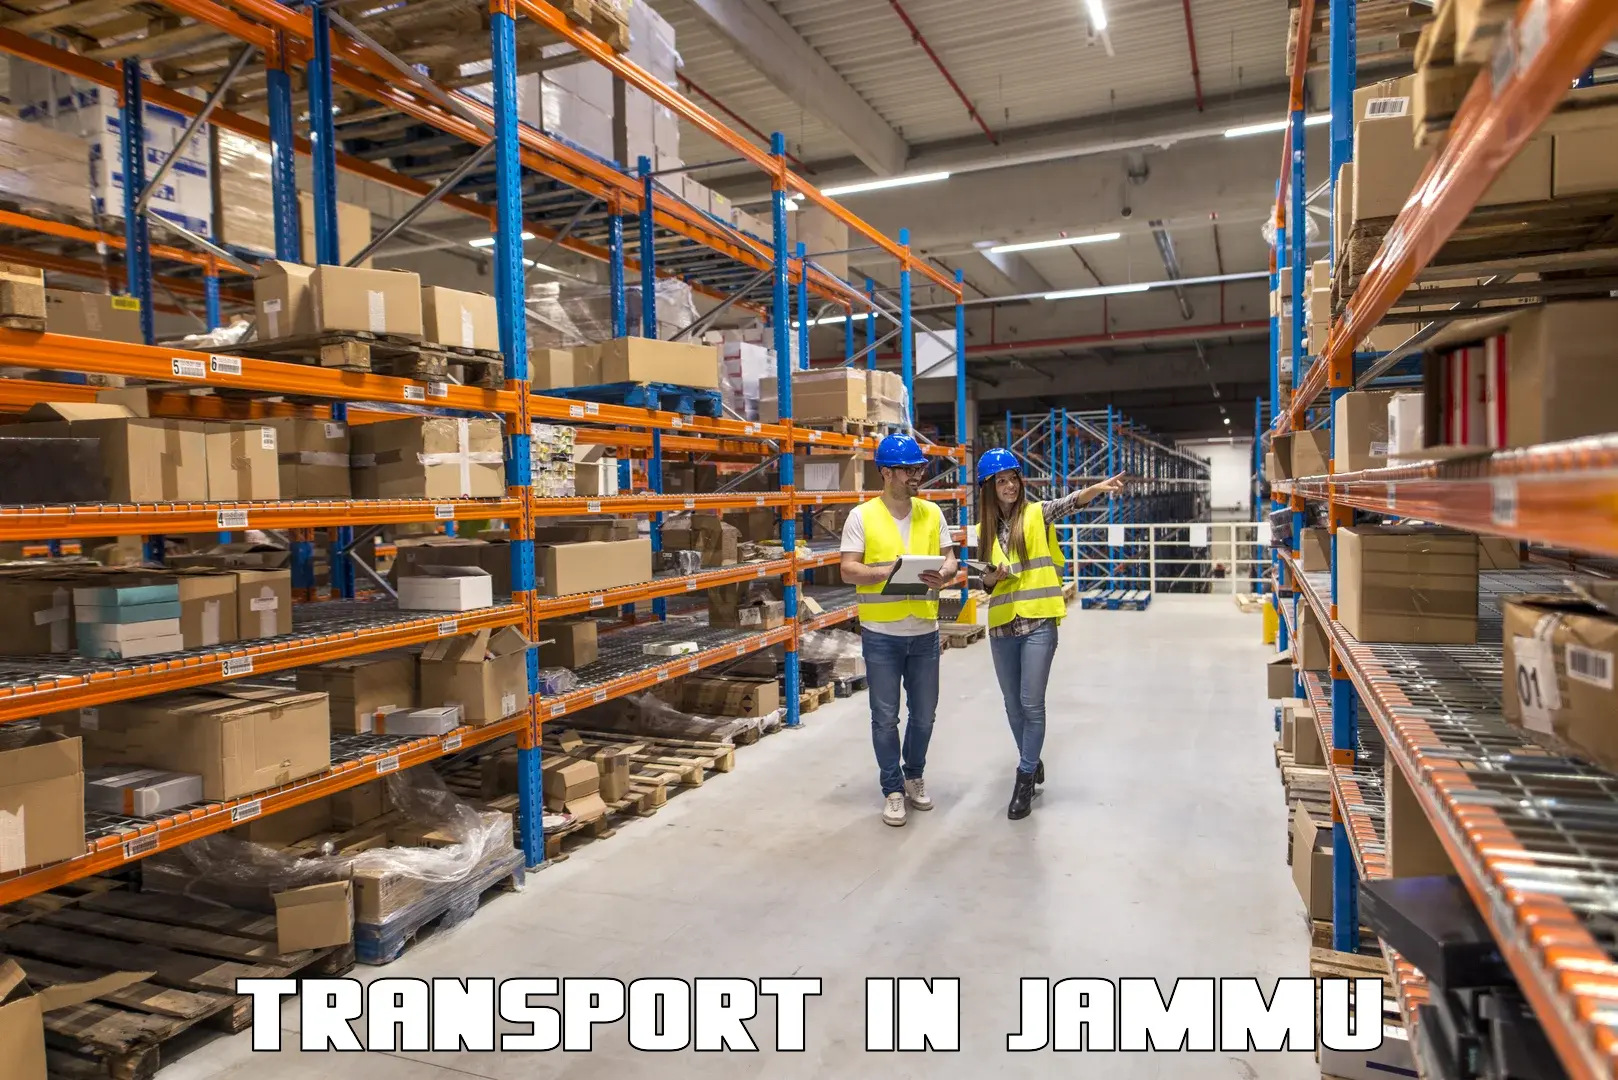 Furniture transport service in Jammu